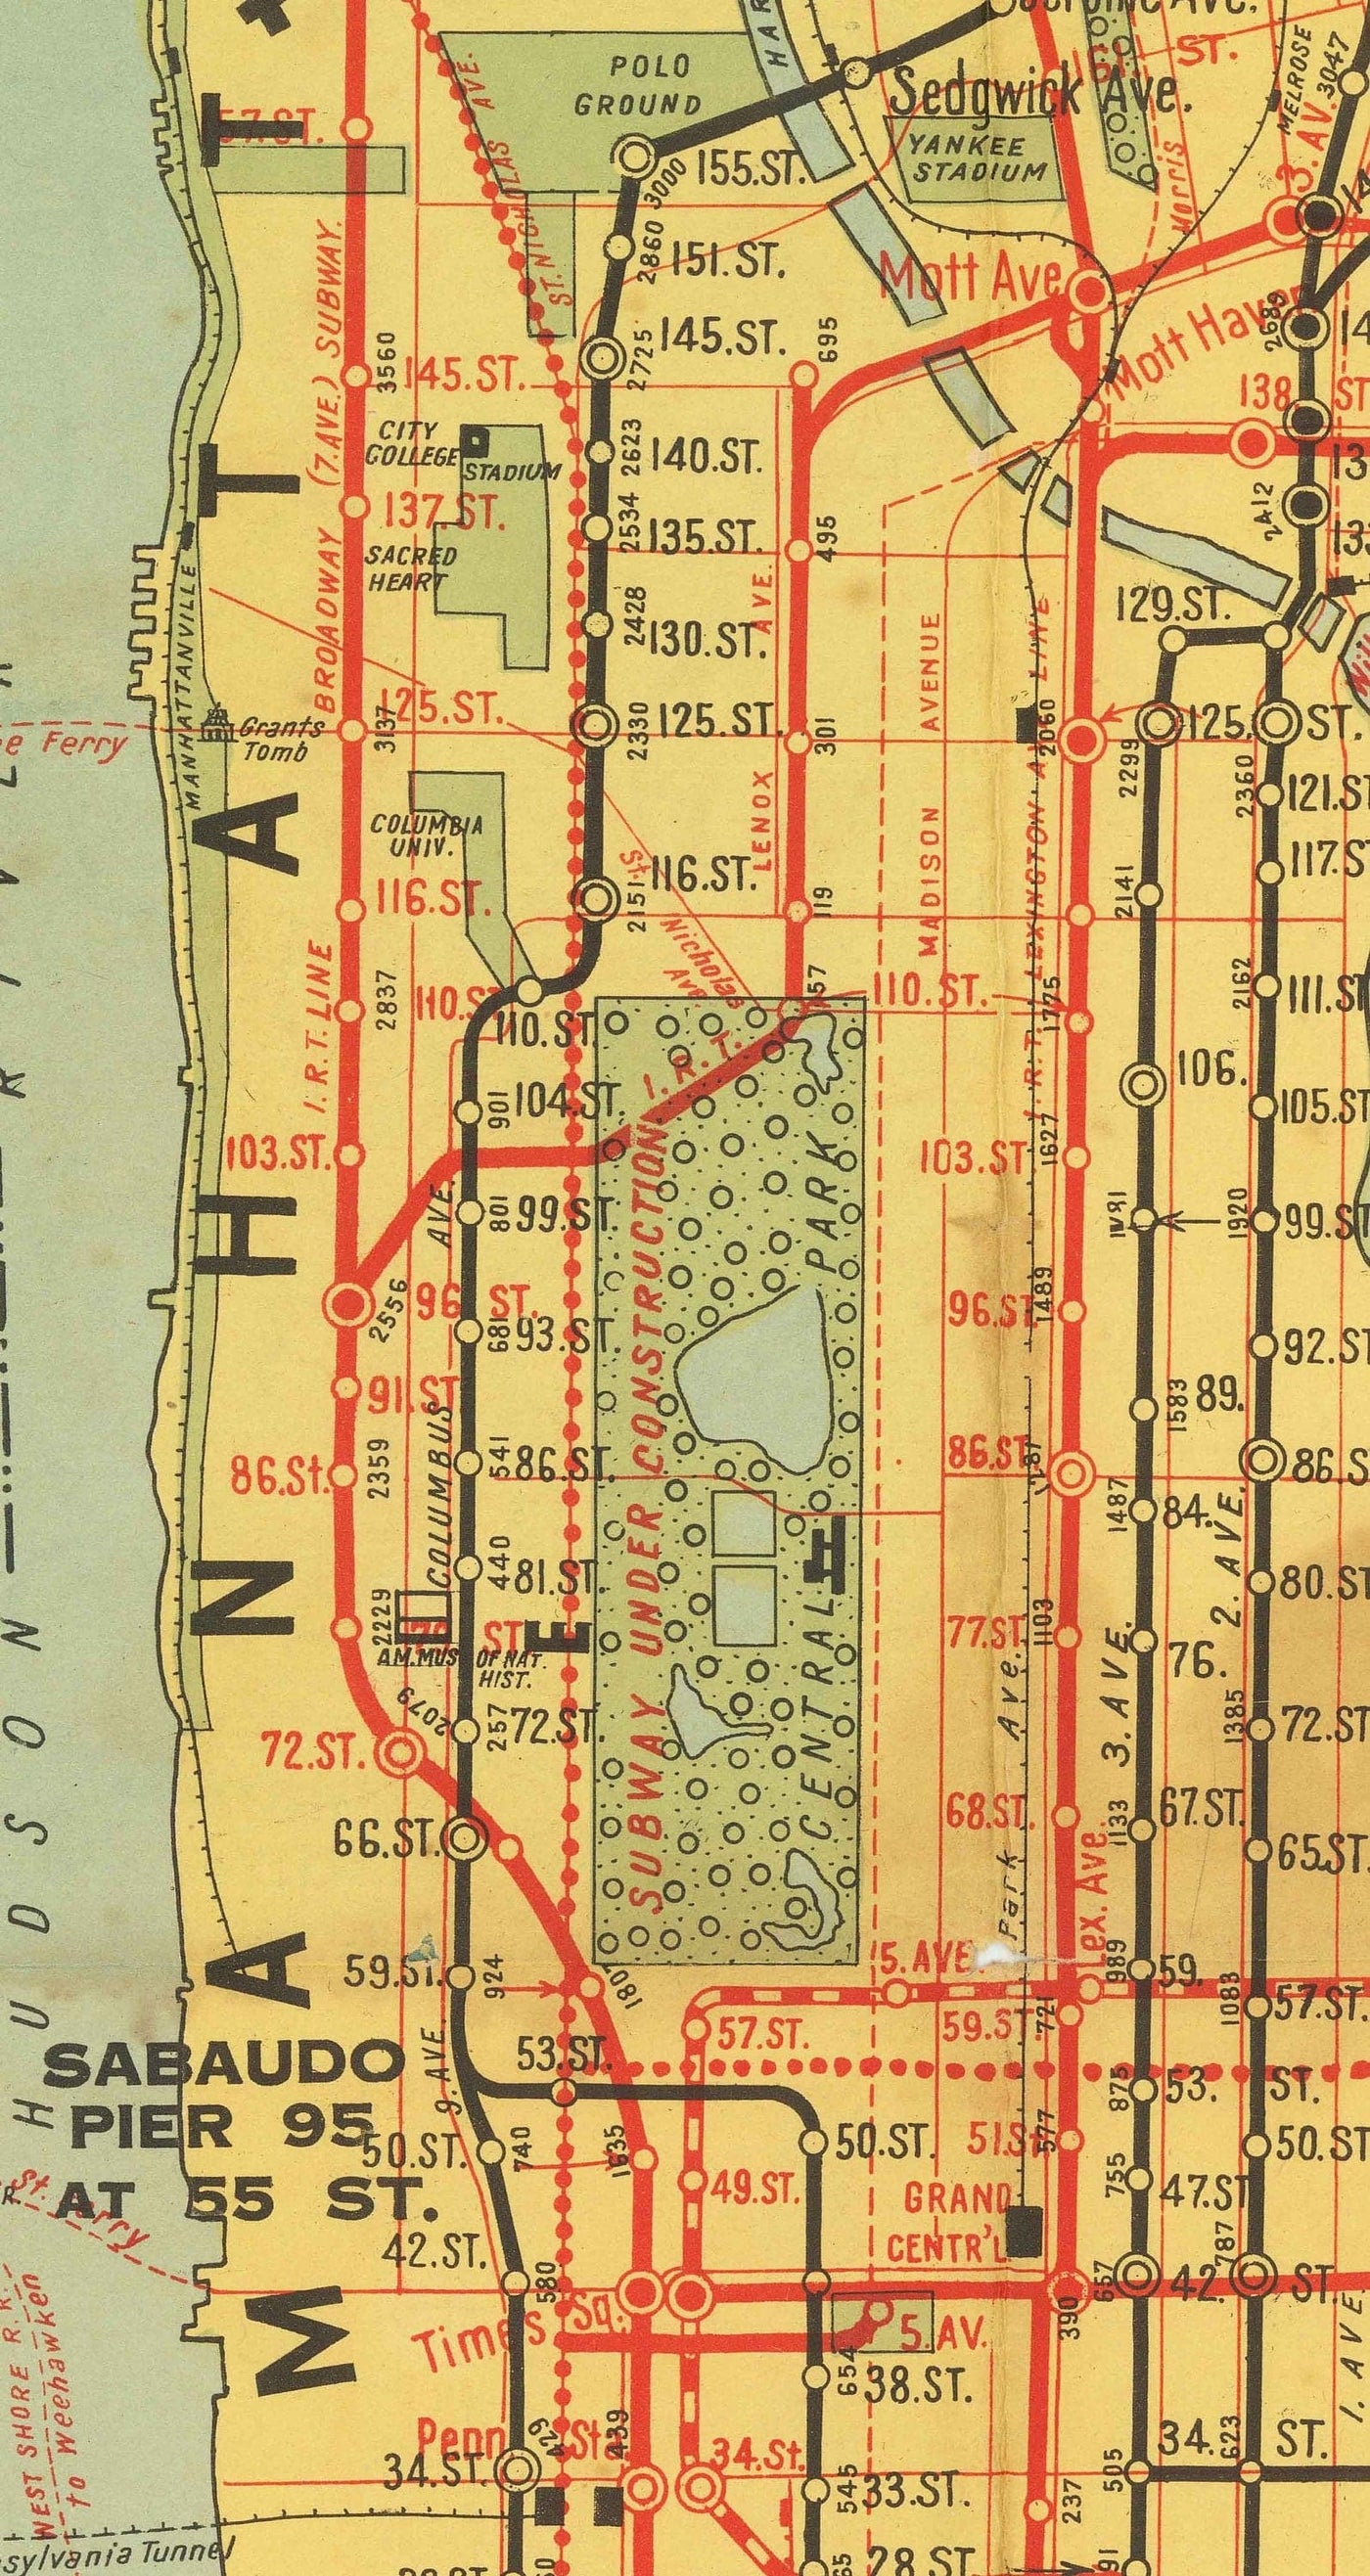 Antiguo mapa del metro de Nueva York en 1927 - Queens, Brooklyn, Railway, Manhattan, INT, BMT, Interboro Elevated Rail